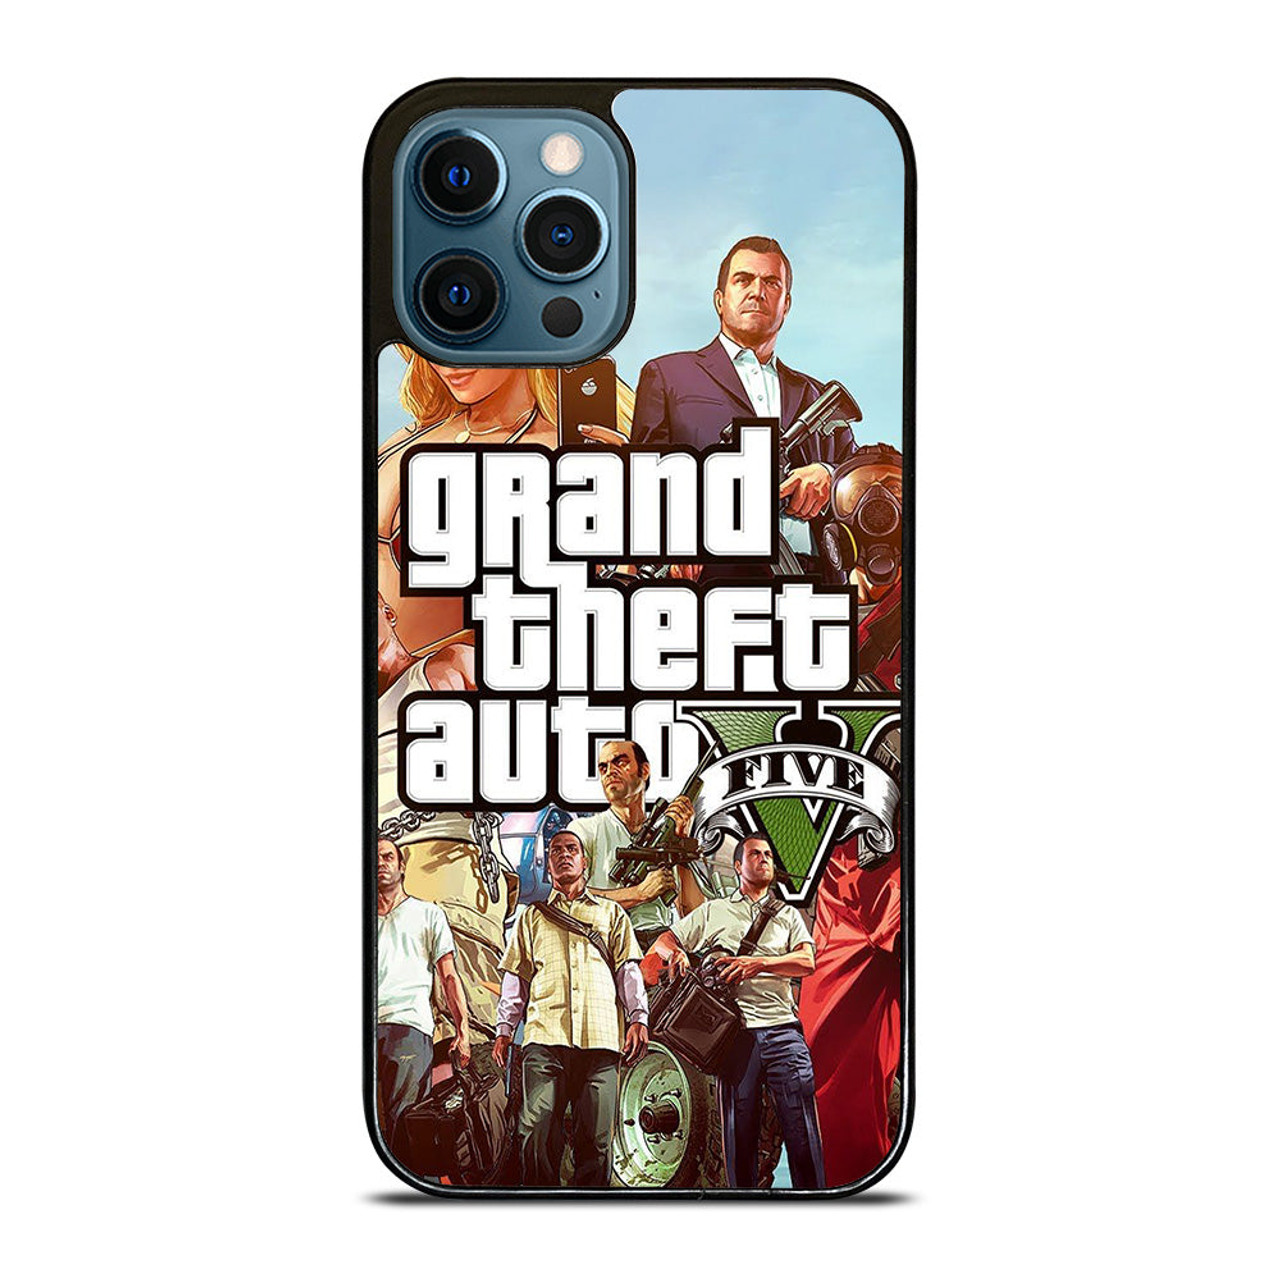 Grand Theft Auto V iPhone 11 Pro Max Case